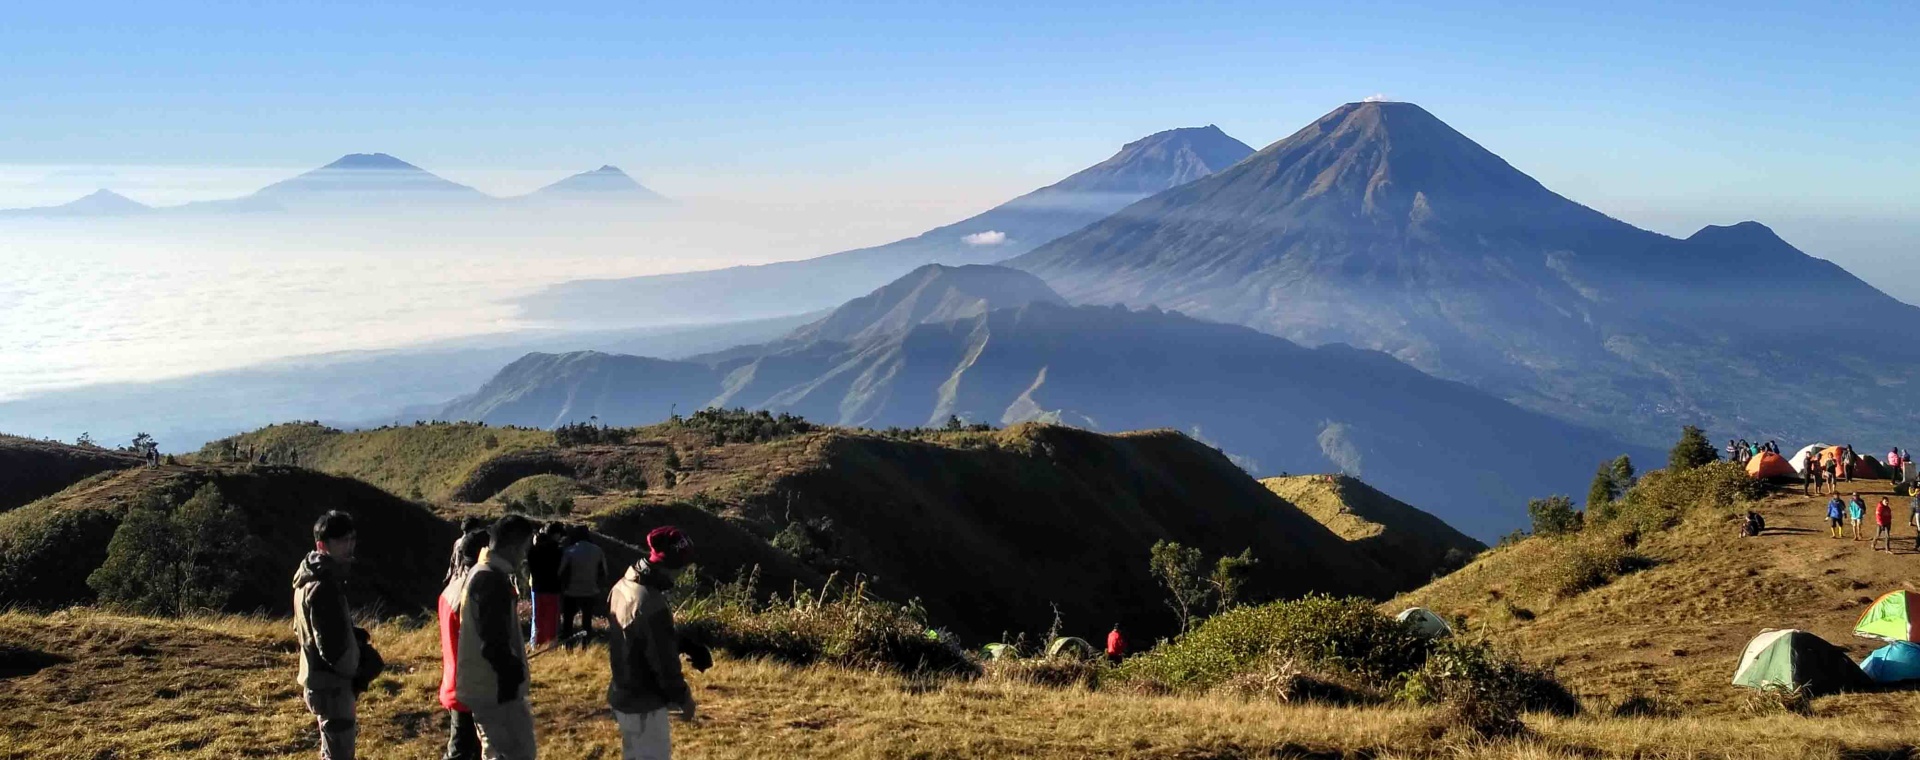 Gunung Sindoro (3.153 MDPL) di Wonosobo, Jawa Tengah, merupakan salah satu destinasi favorit dengan keunggulan alam yang bersih dan asri. sumber: jatengprov.go.id